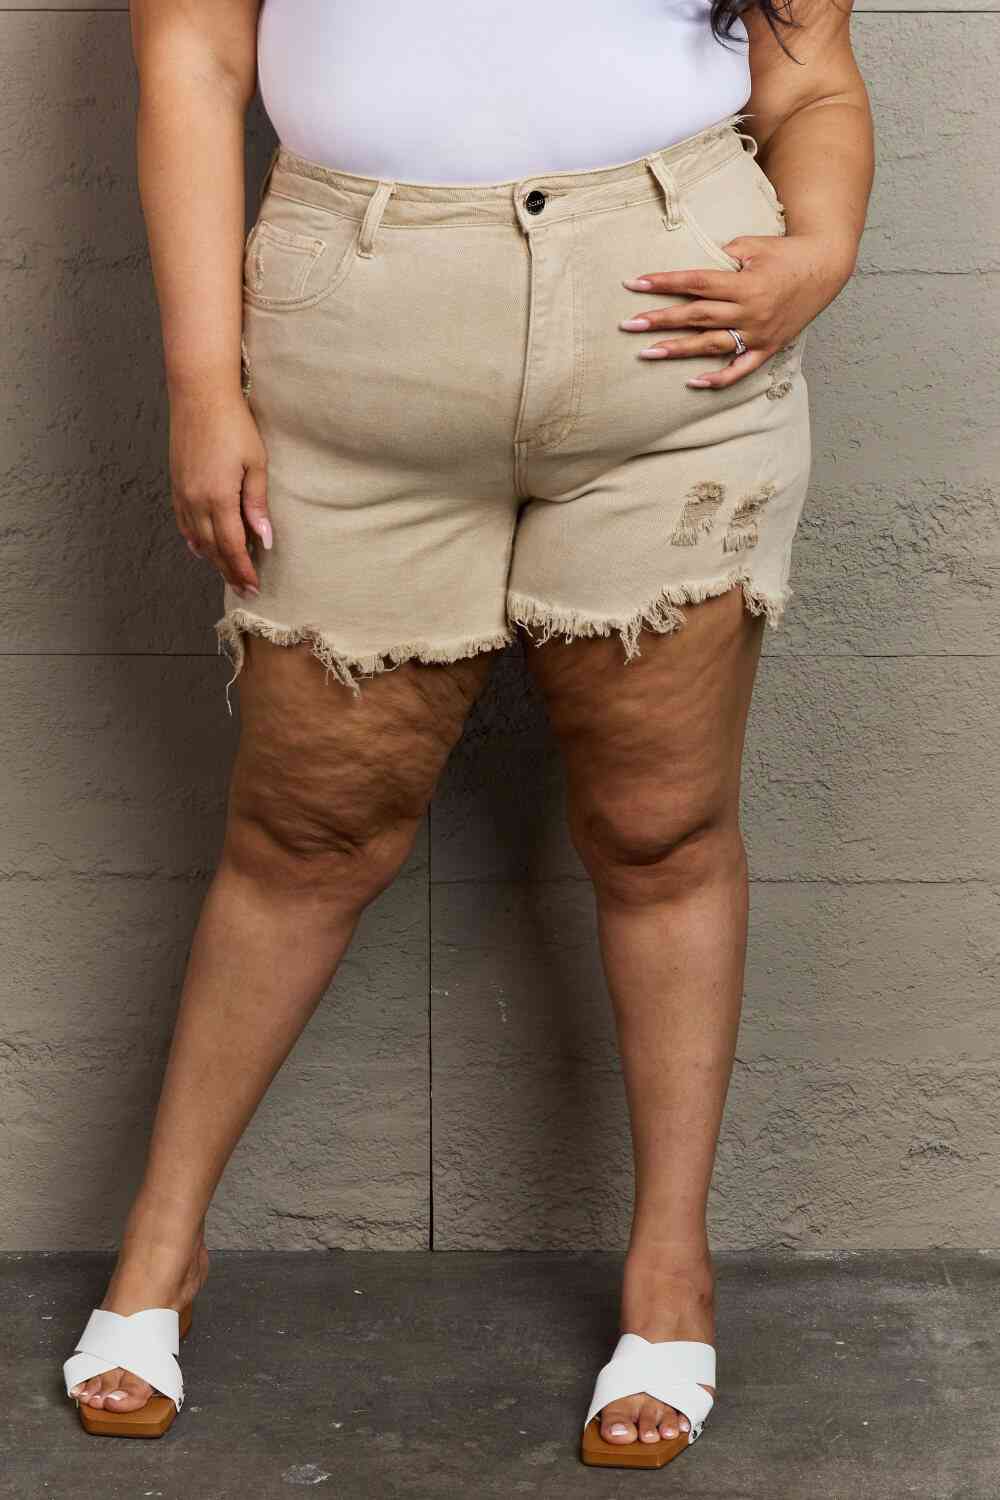 RISEN Katie Pantalones cortos desgastados de cintura alta de tamaño completo en color arena